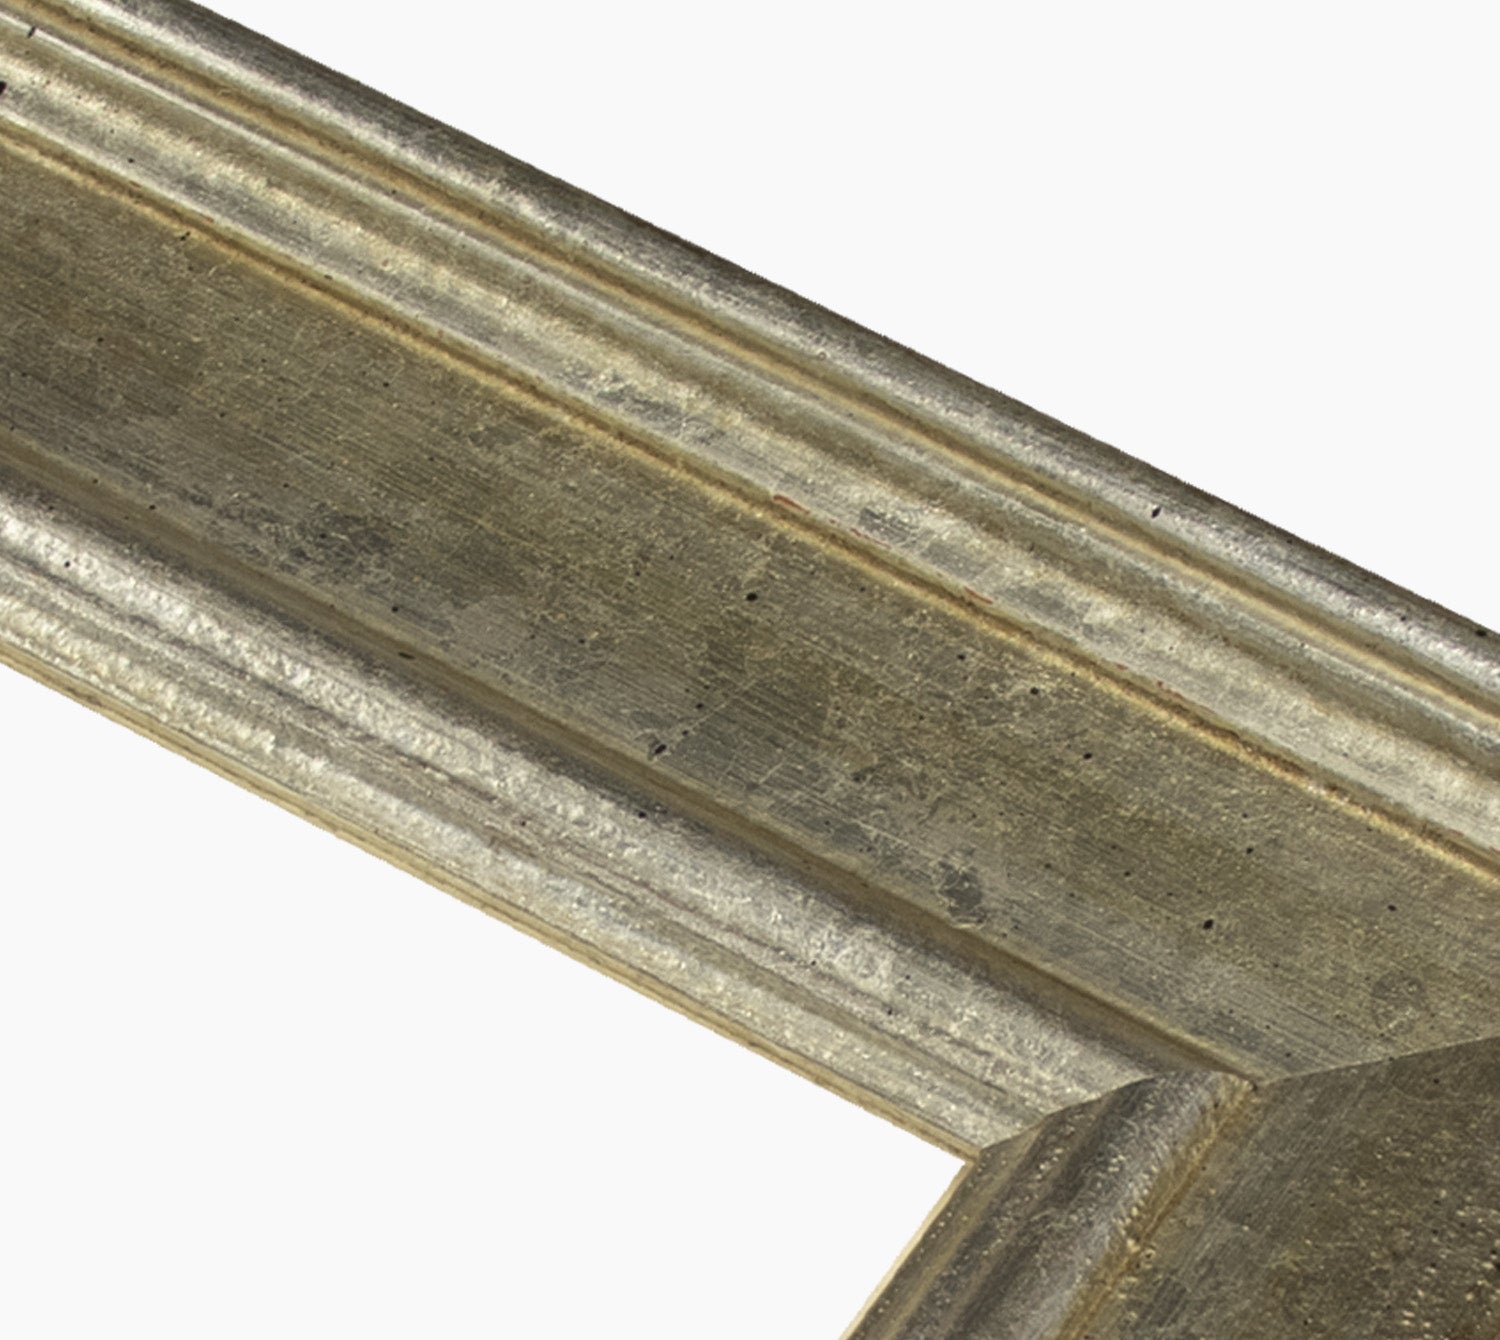 340.011 cadre en bois à la feuille d'argent mesure de profil 60x30 mm Lombarda cornici S.n.c.